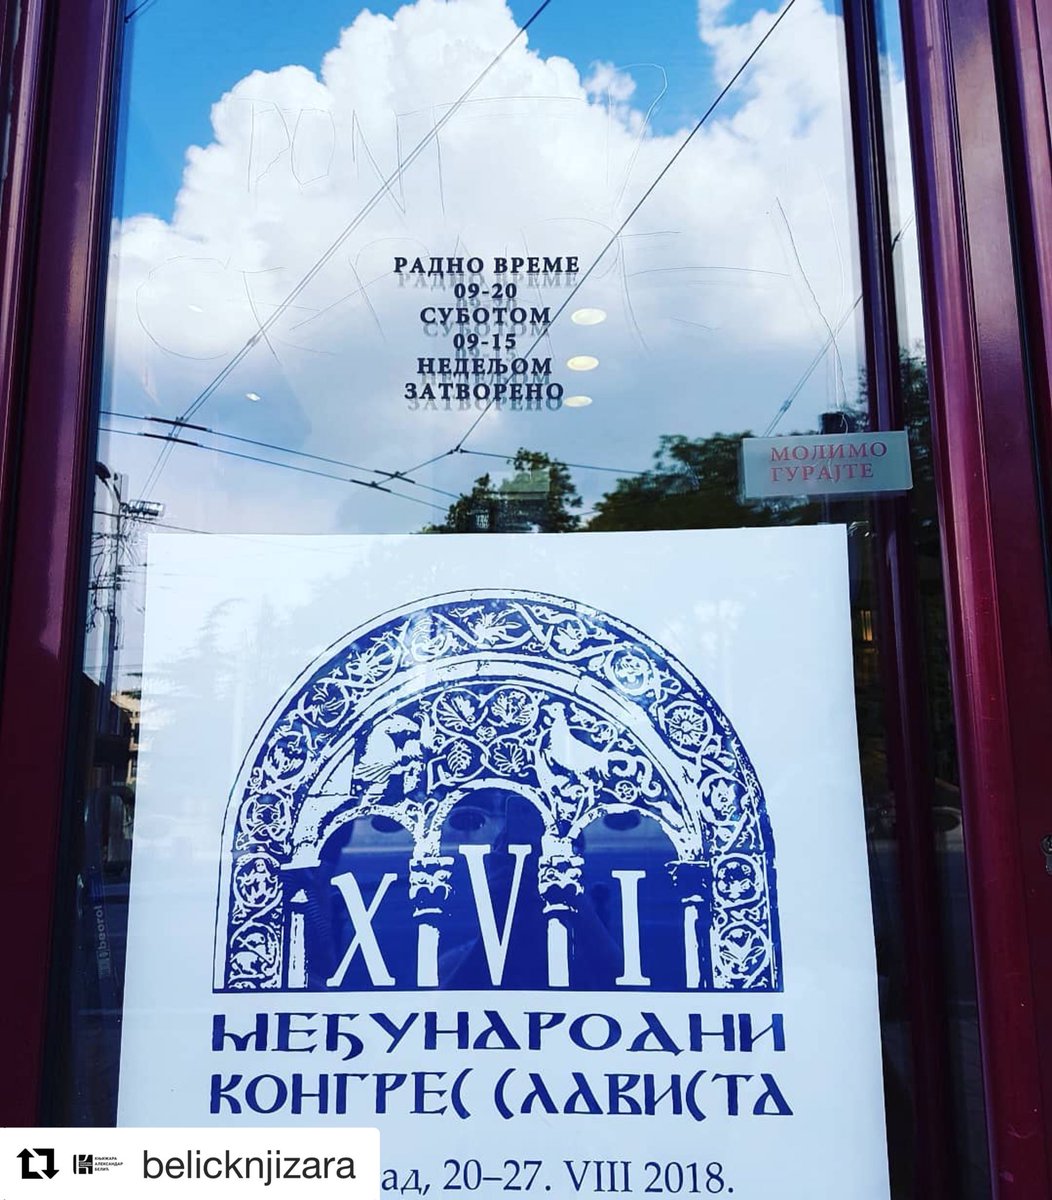 Beograd će nedelju dana biti središte najvećeg skupa posvećenog slovenskim jezicima, a manifestacija će biti i omaž  Aleksandru Beliću!
Mi otvaramo naša vrata slavistima iz celoga sveta, kao i svima koji uživaju u nauci o jeziku! 
#belicknjizara #kolarac #slavicstudies